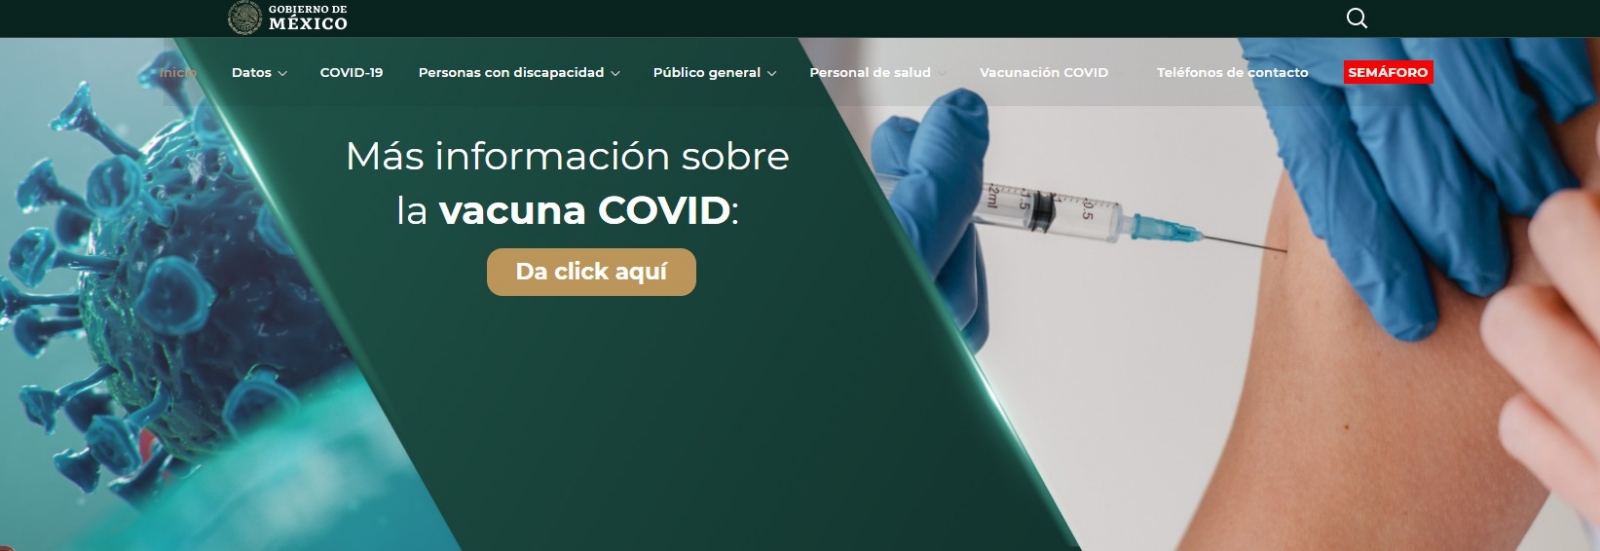 Aparecen chicas en bikini en página oficial del coronavirus del Gobierno de México